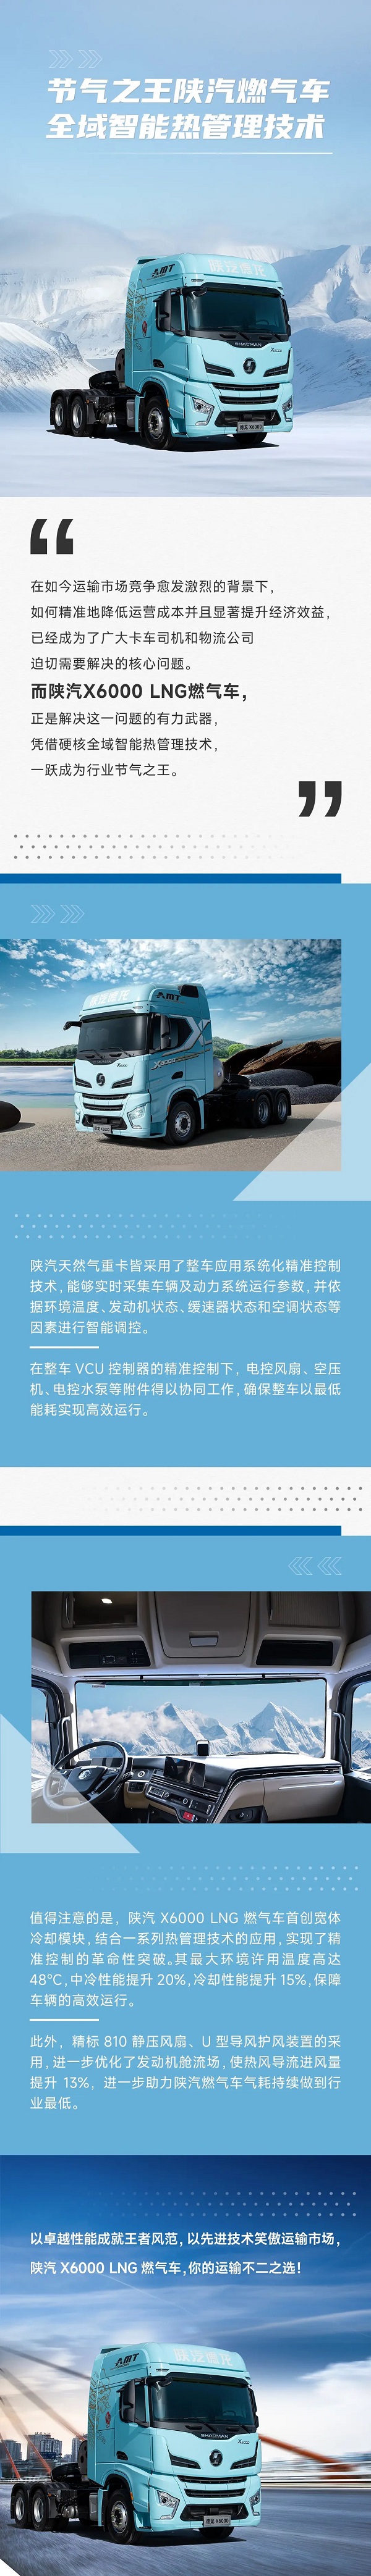 节气之王陕汽燃气车-全域智能热管理技术